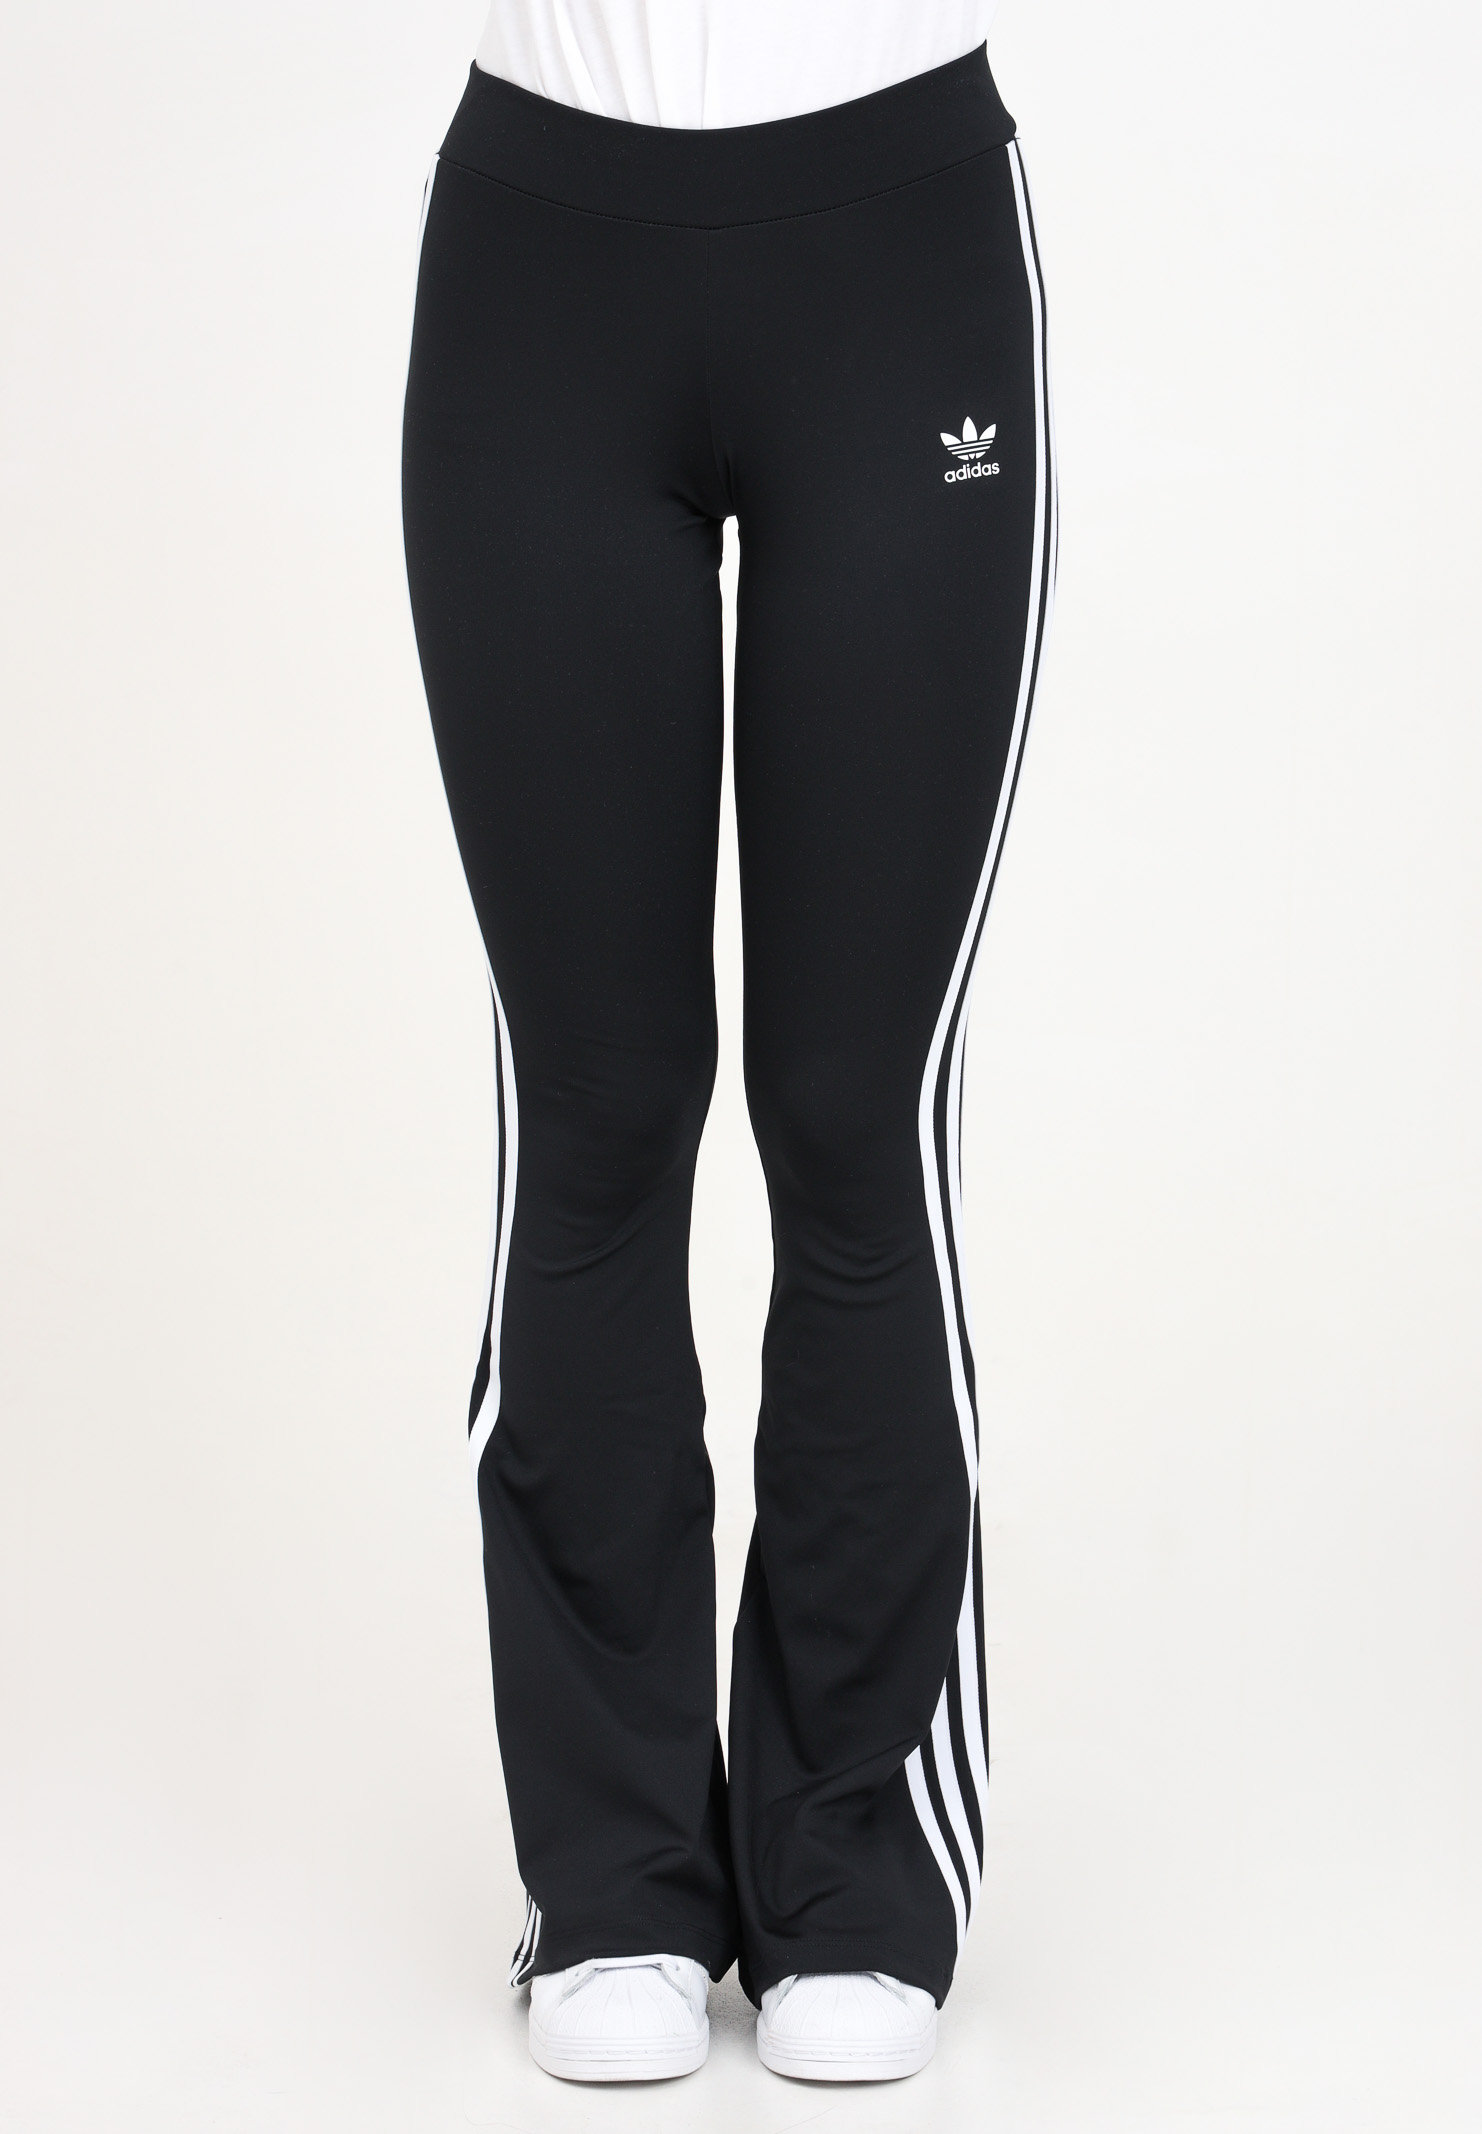 Black 3-stripes leggings for women - ADIDAS ORIGINALS - Pavidas